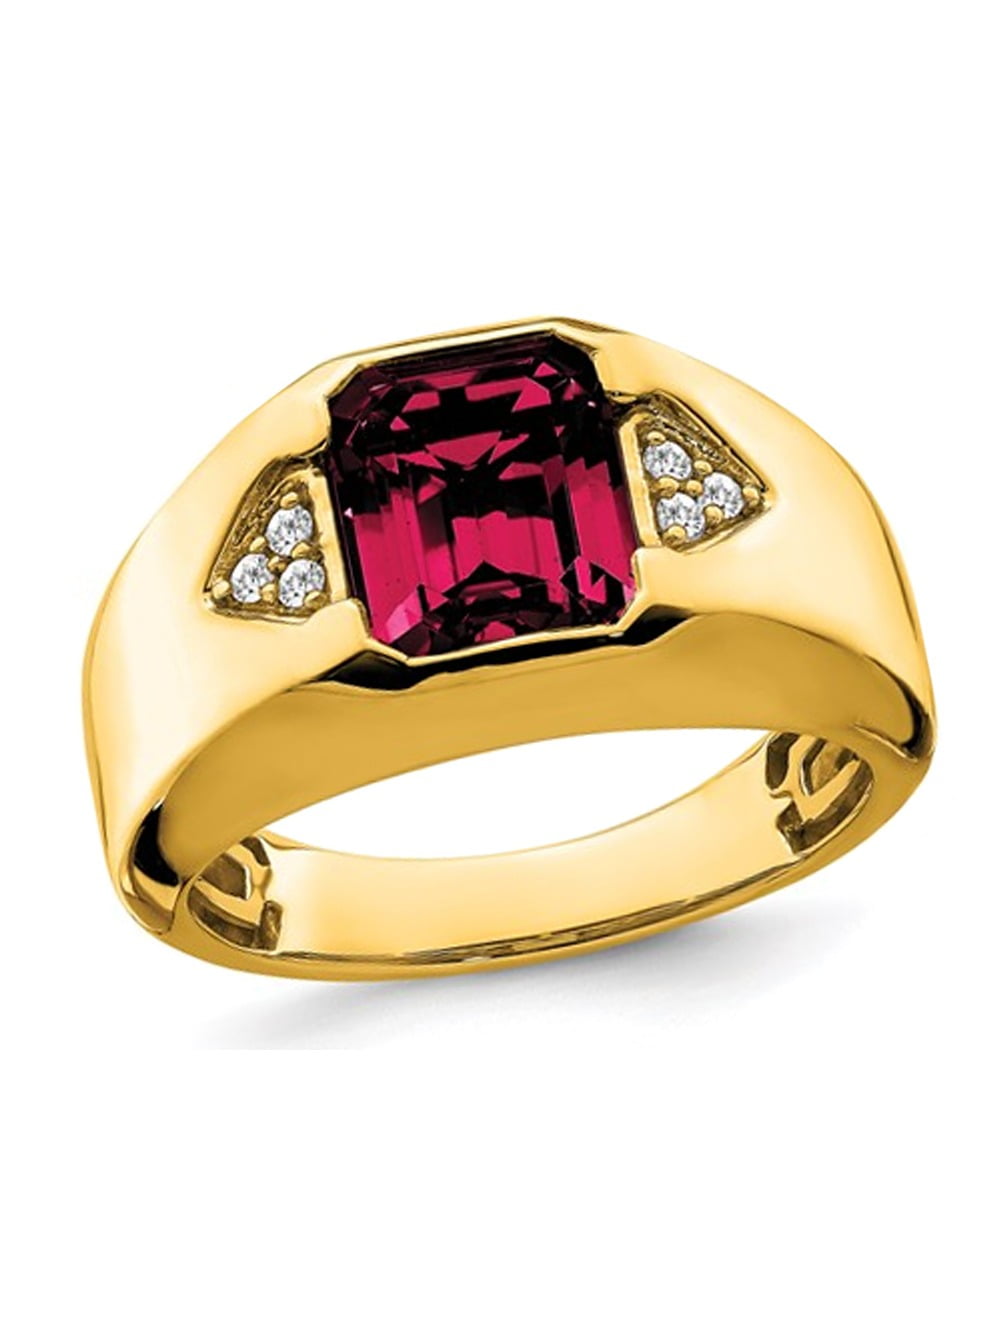 MAN64r Men's Ring With Ruby Gemstone, Custom Rings For Men-vinhomehanoi.com.vn